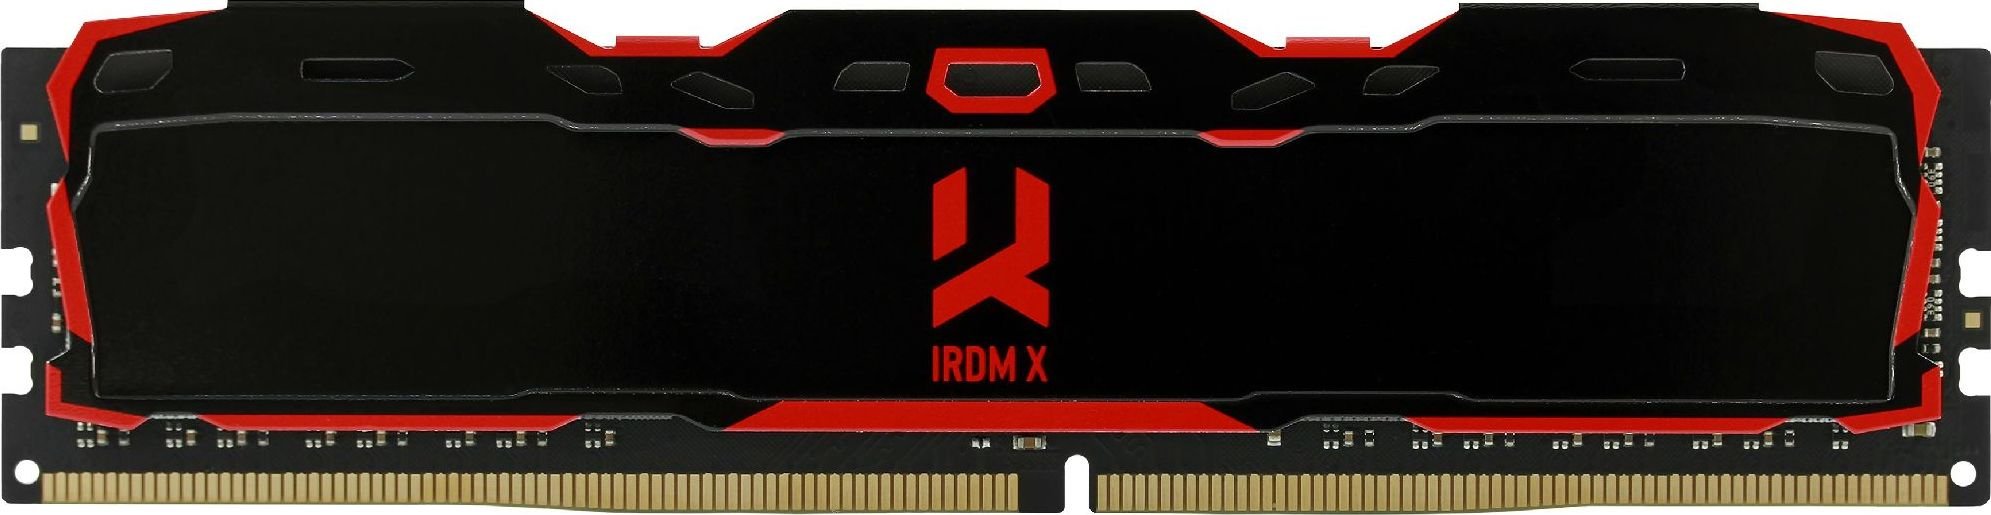 Memorie RAM Goodram IRDM X, IR-X2666D464L16/16G, 16GB, DDR4, 2666MHz, CL16